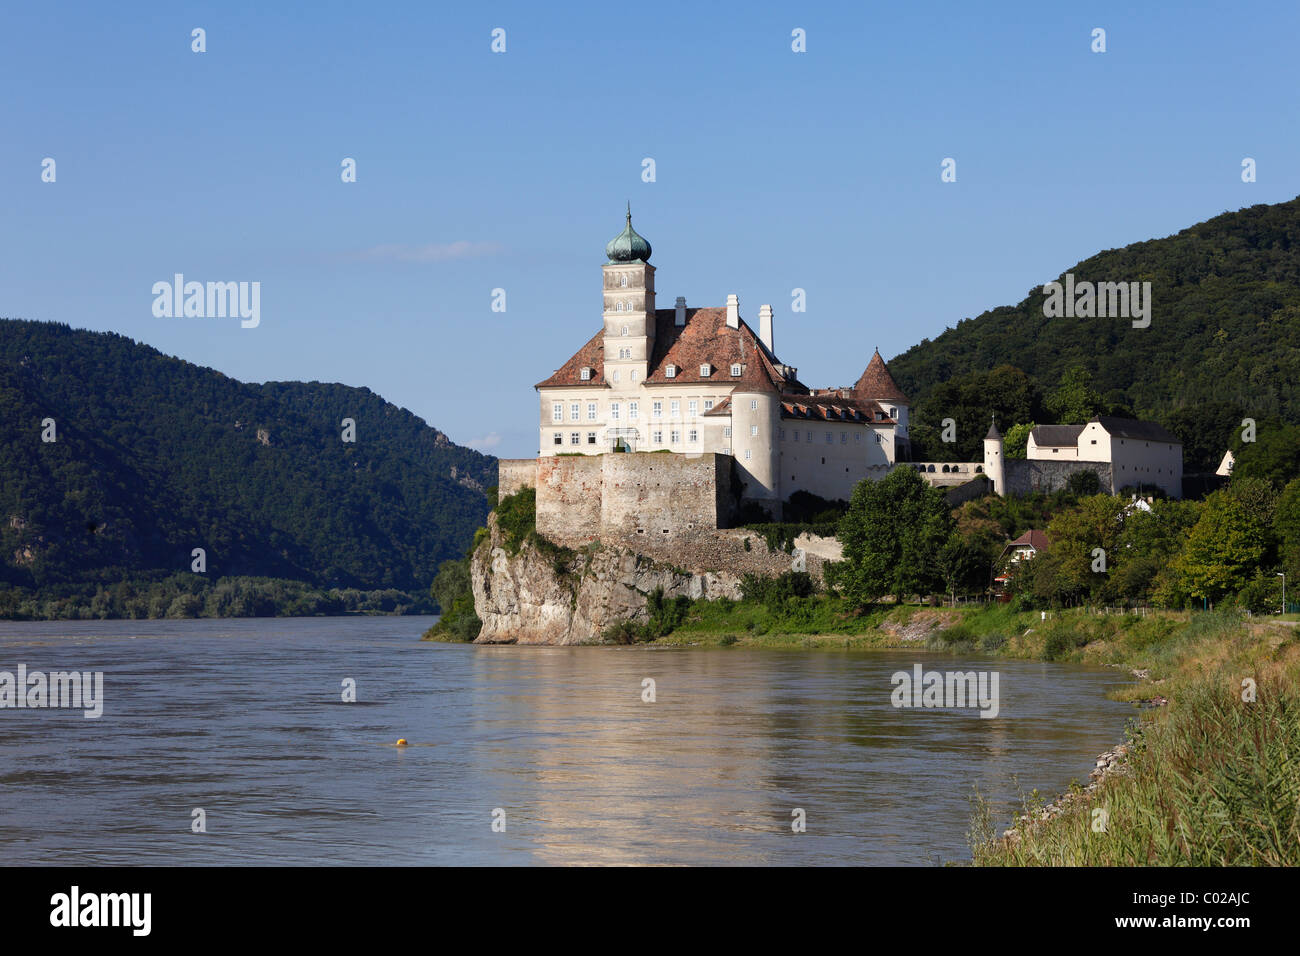 Schloss Schoenbuehel Palast auf der Donau, Wachau, Mostviertel, senken, Austria, Österreich, Europa Stockfoto